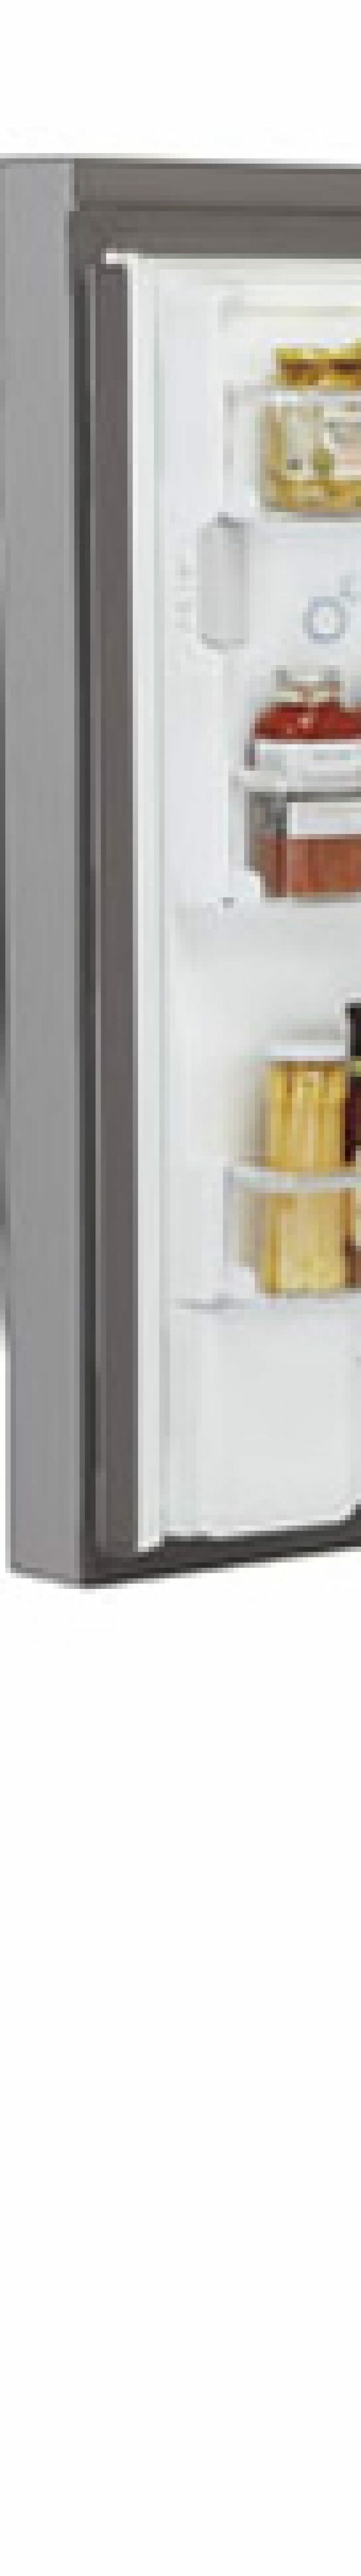 Nova geladeira da LG Door-in-Door poupa espaço com portas de dois estágios